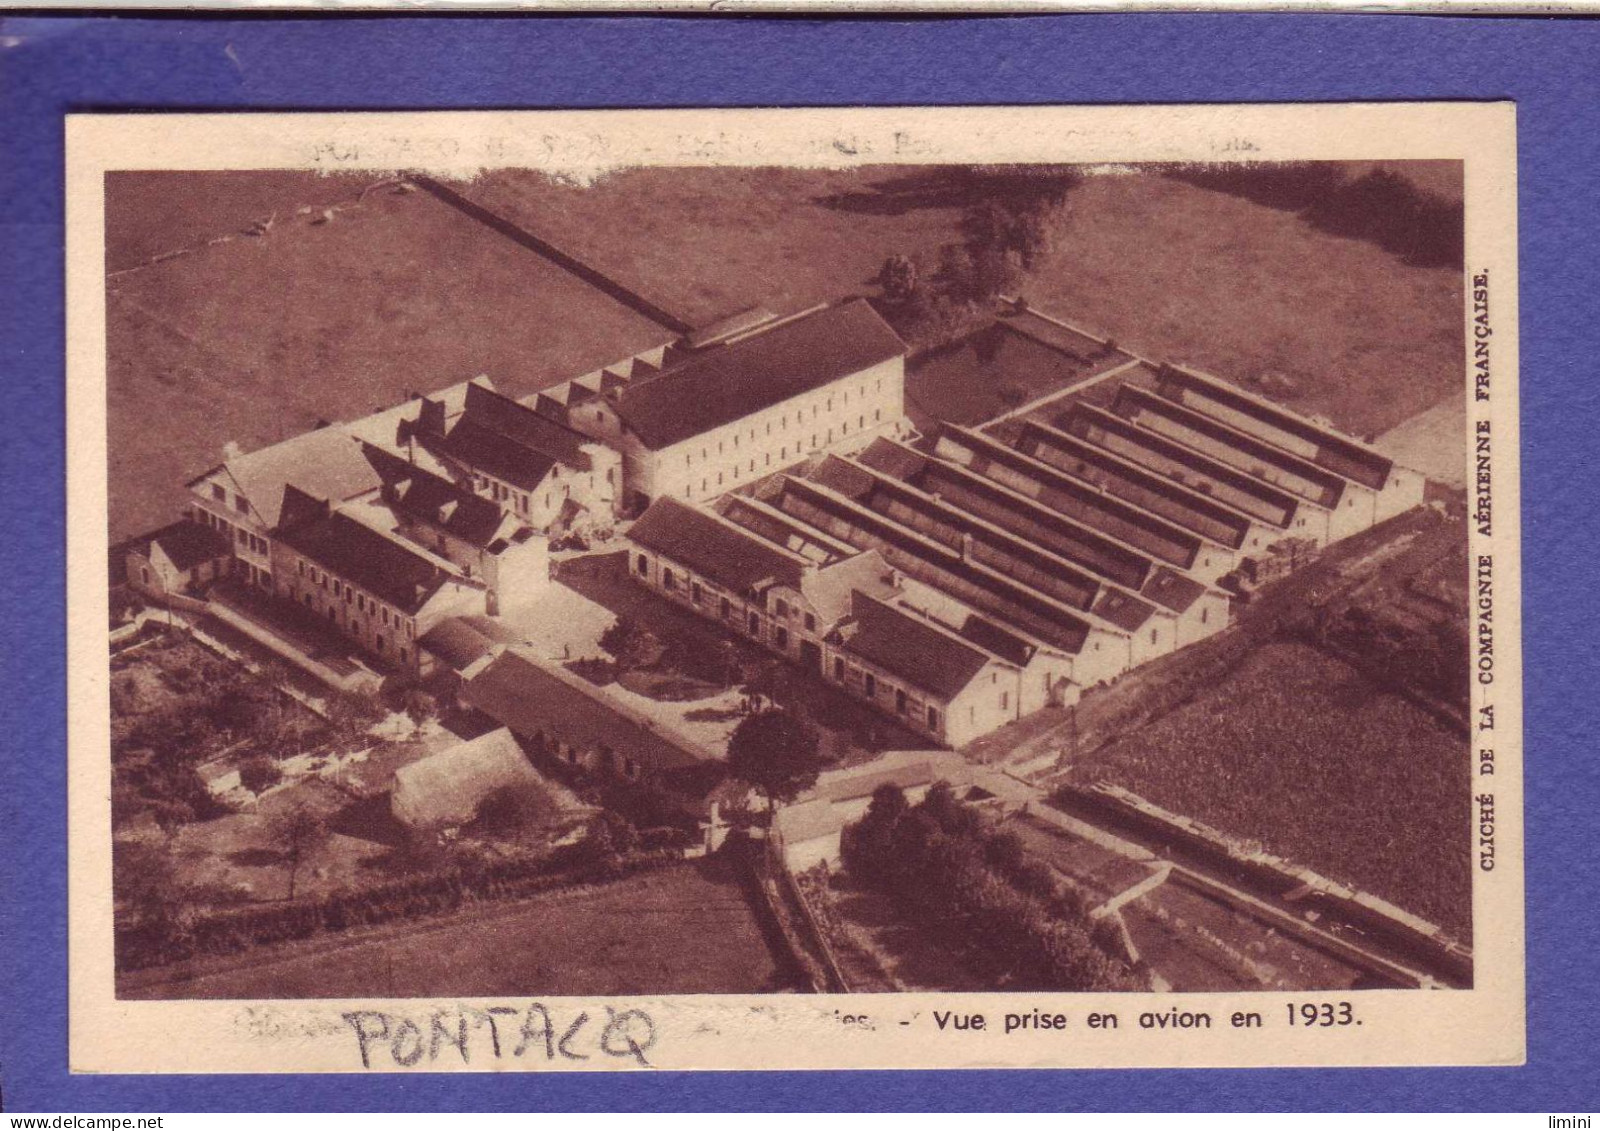 64 - PONTACQ - FABRIQUE De CHAUSSURES - VUE D'AVION En 1933 -  - Pontacq